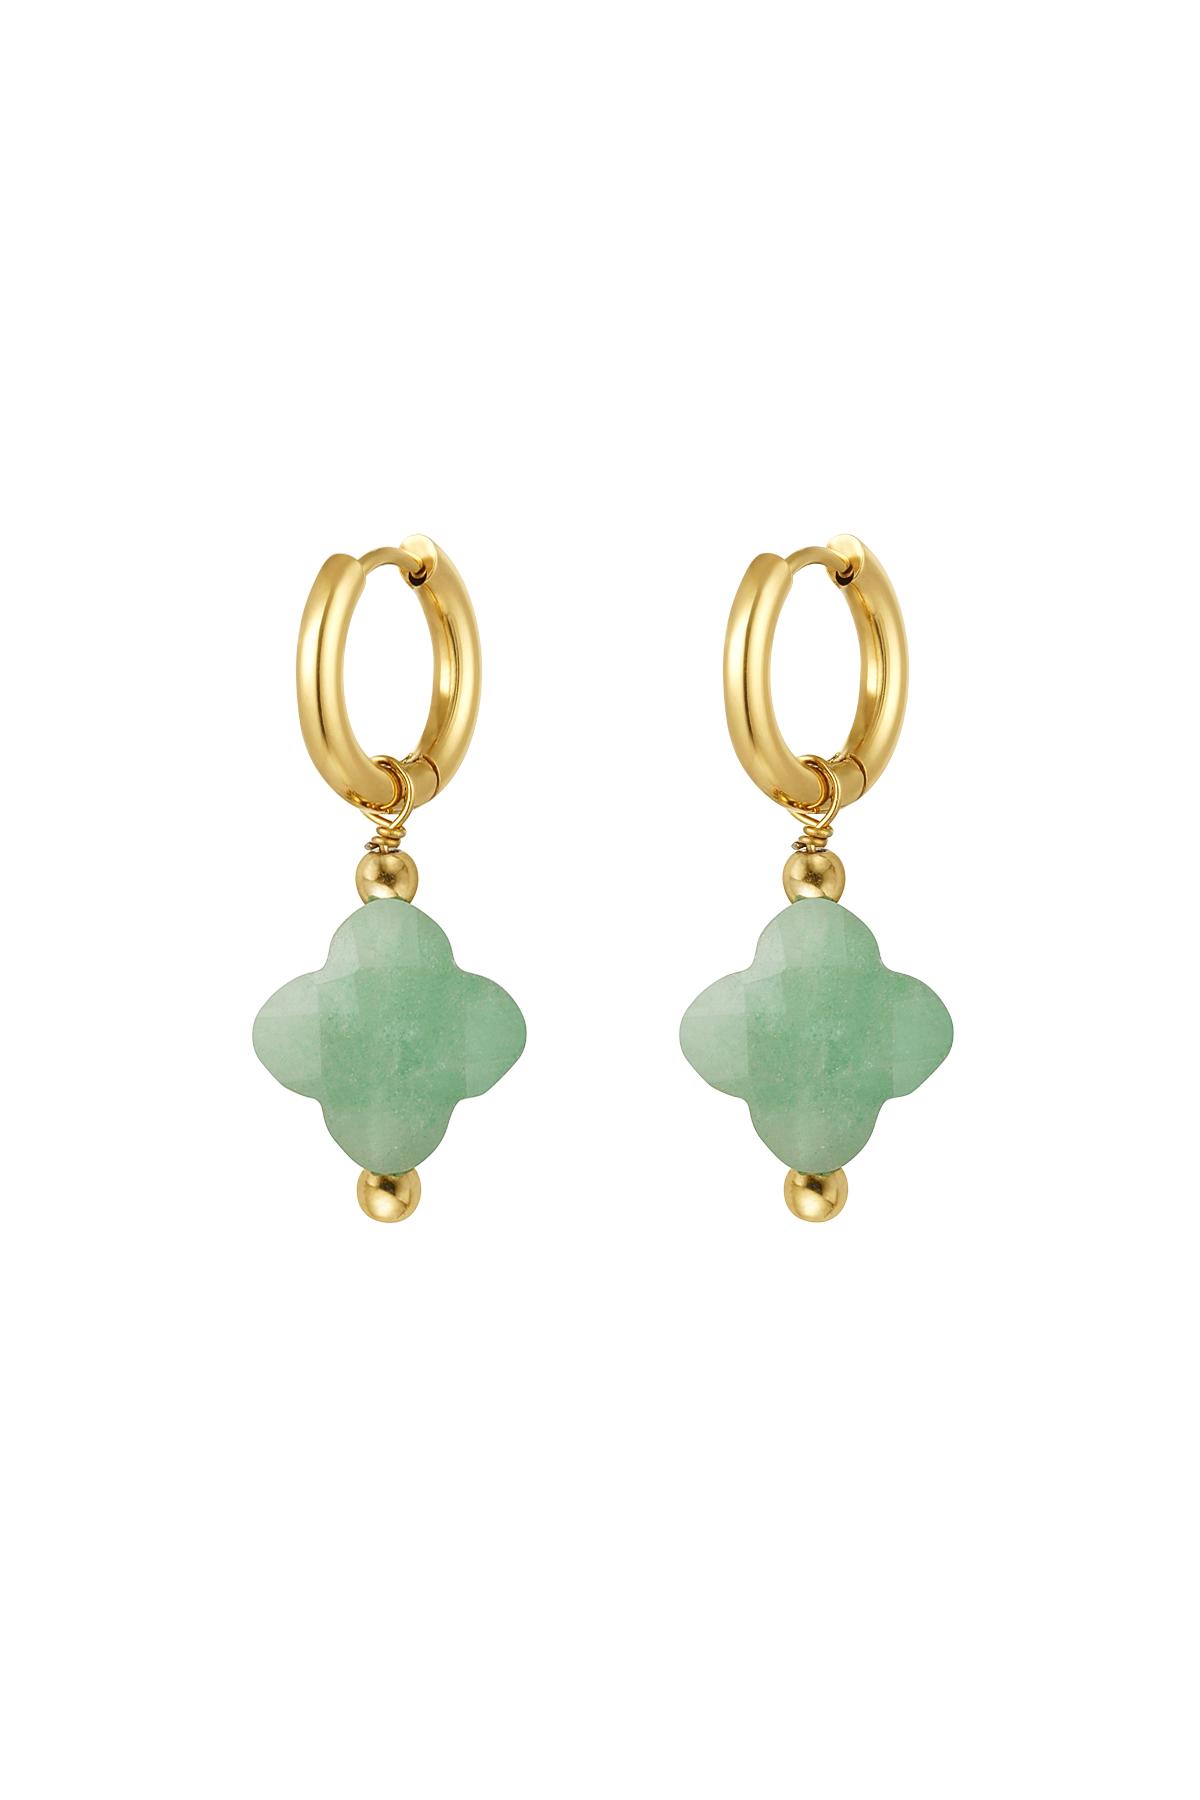 Boucles d'oreilles couleur trèfle - Collection pierres naturelles Vert & Or Acier inoxydable 